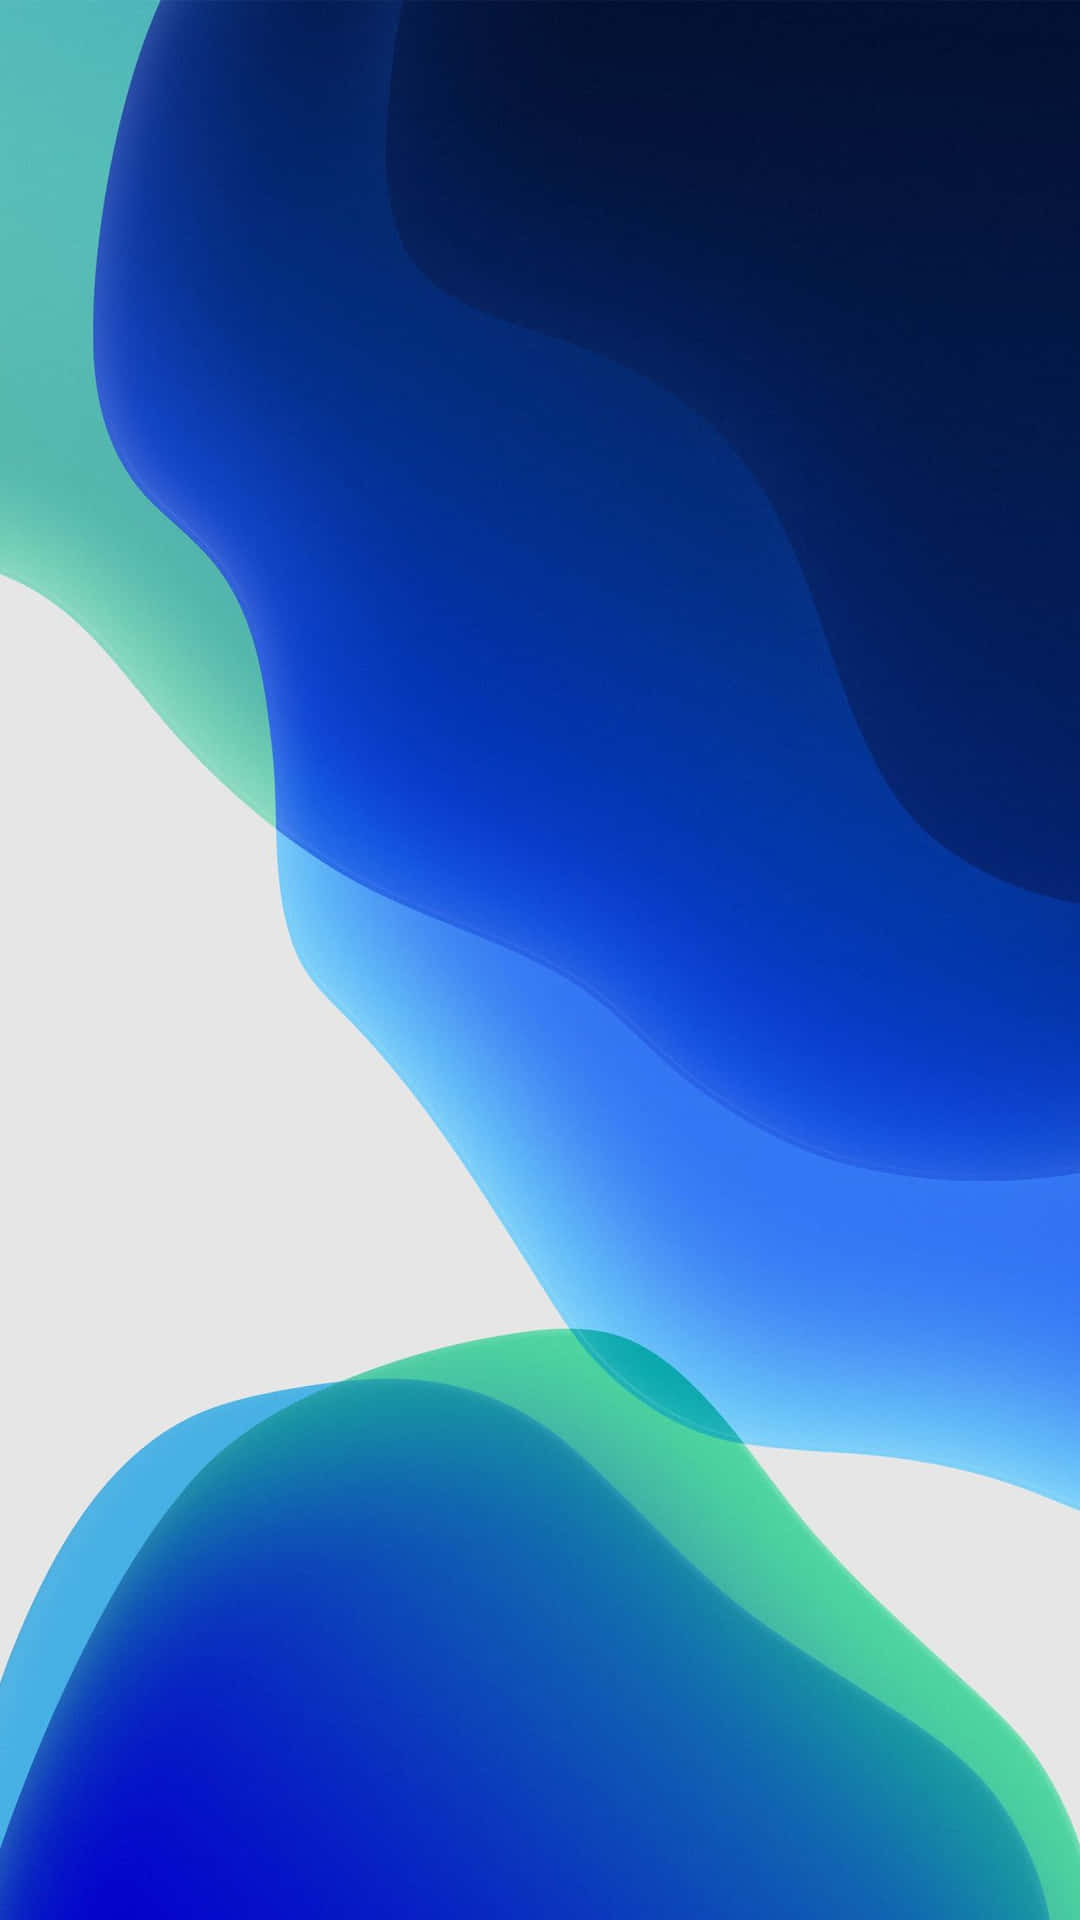 Iphonexr In Standard Blau, Grün Und Weiß Wallpaper